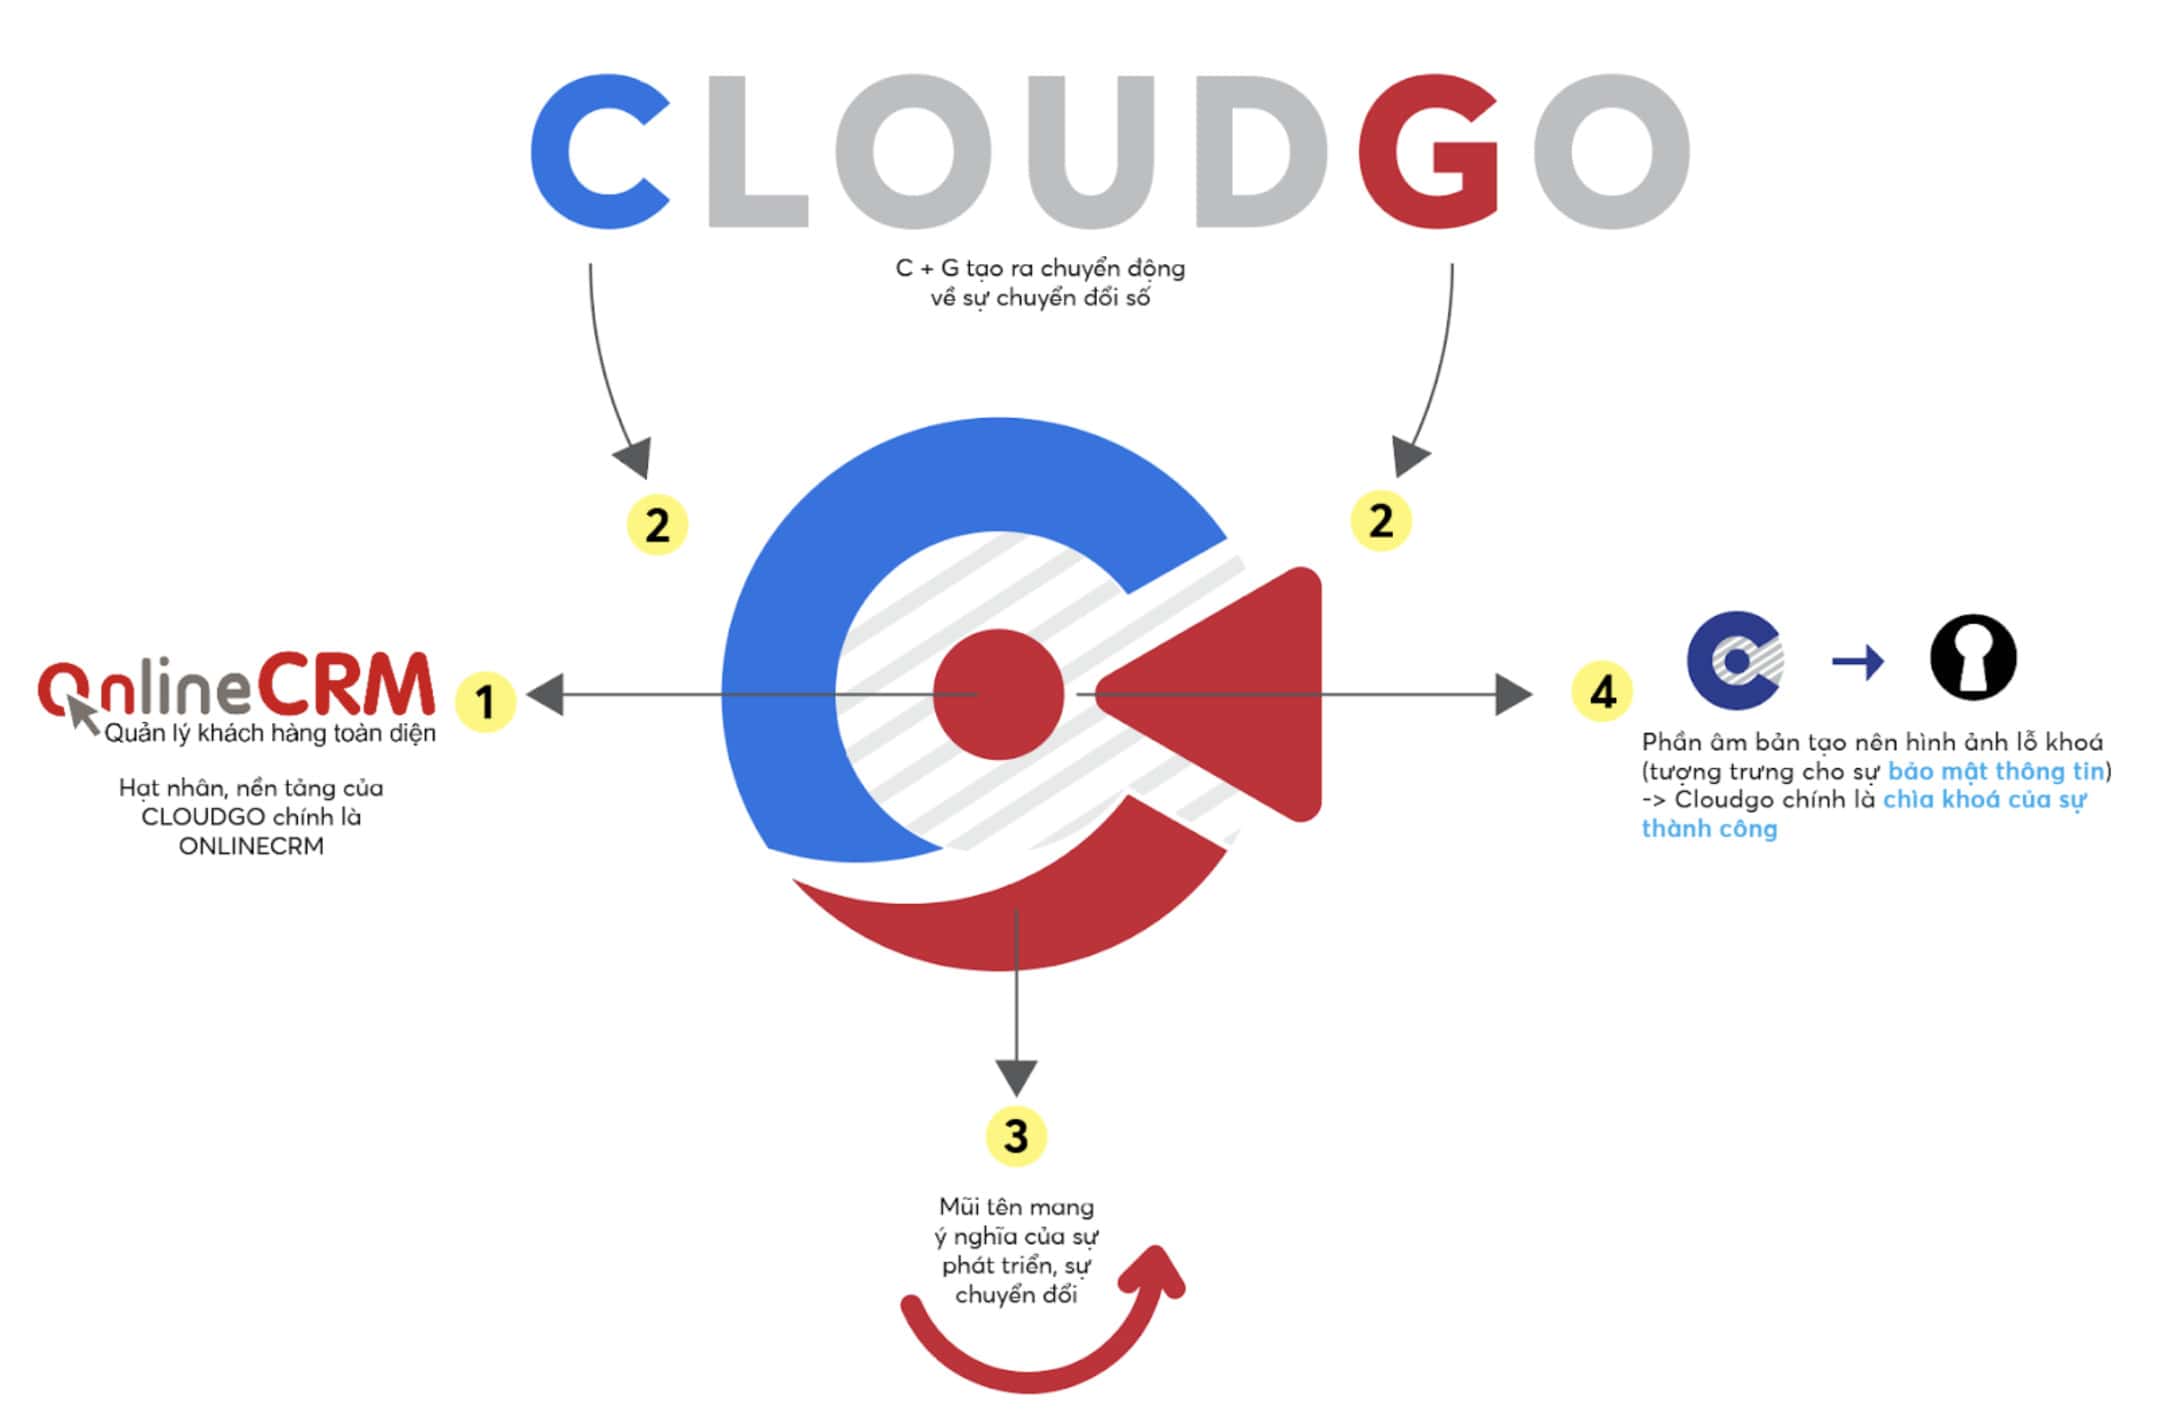 Ý nghĩa chi tiết các hình ảnh trong logo CloudGO